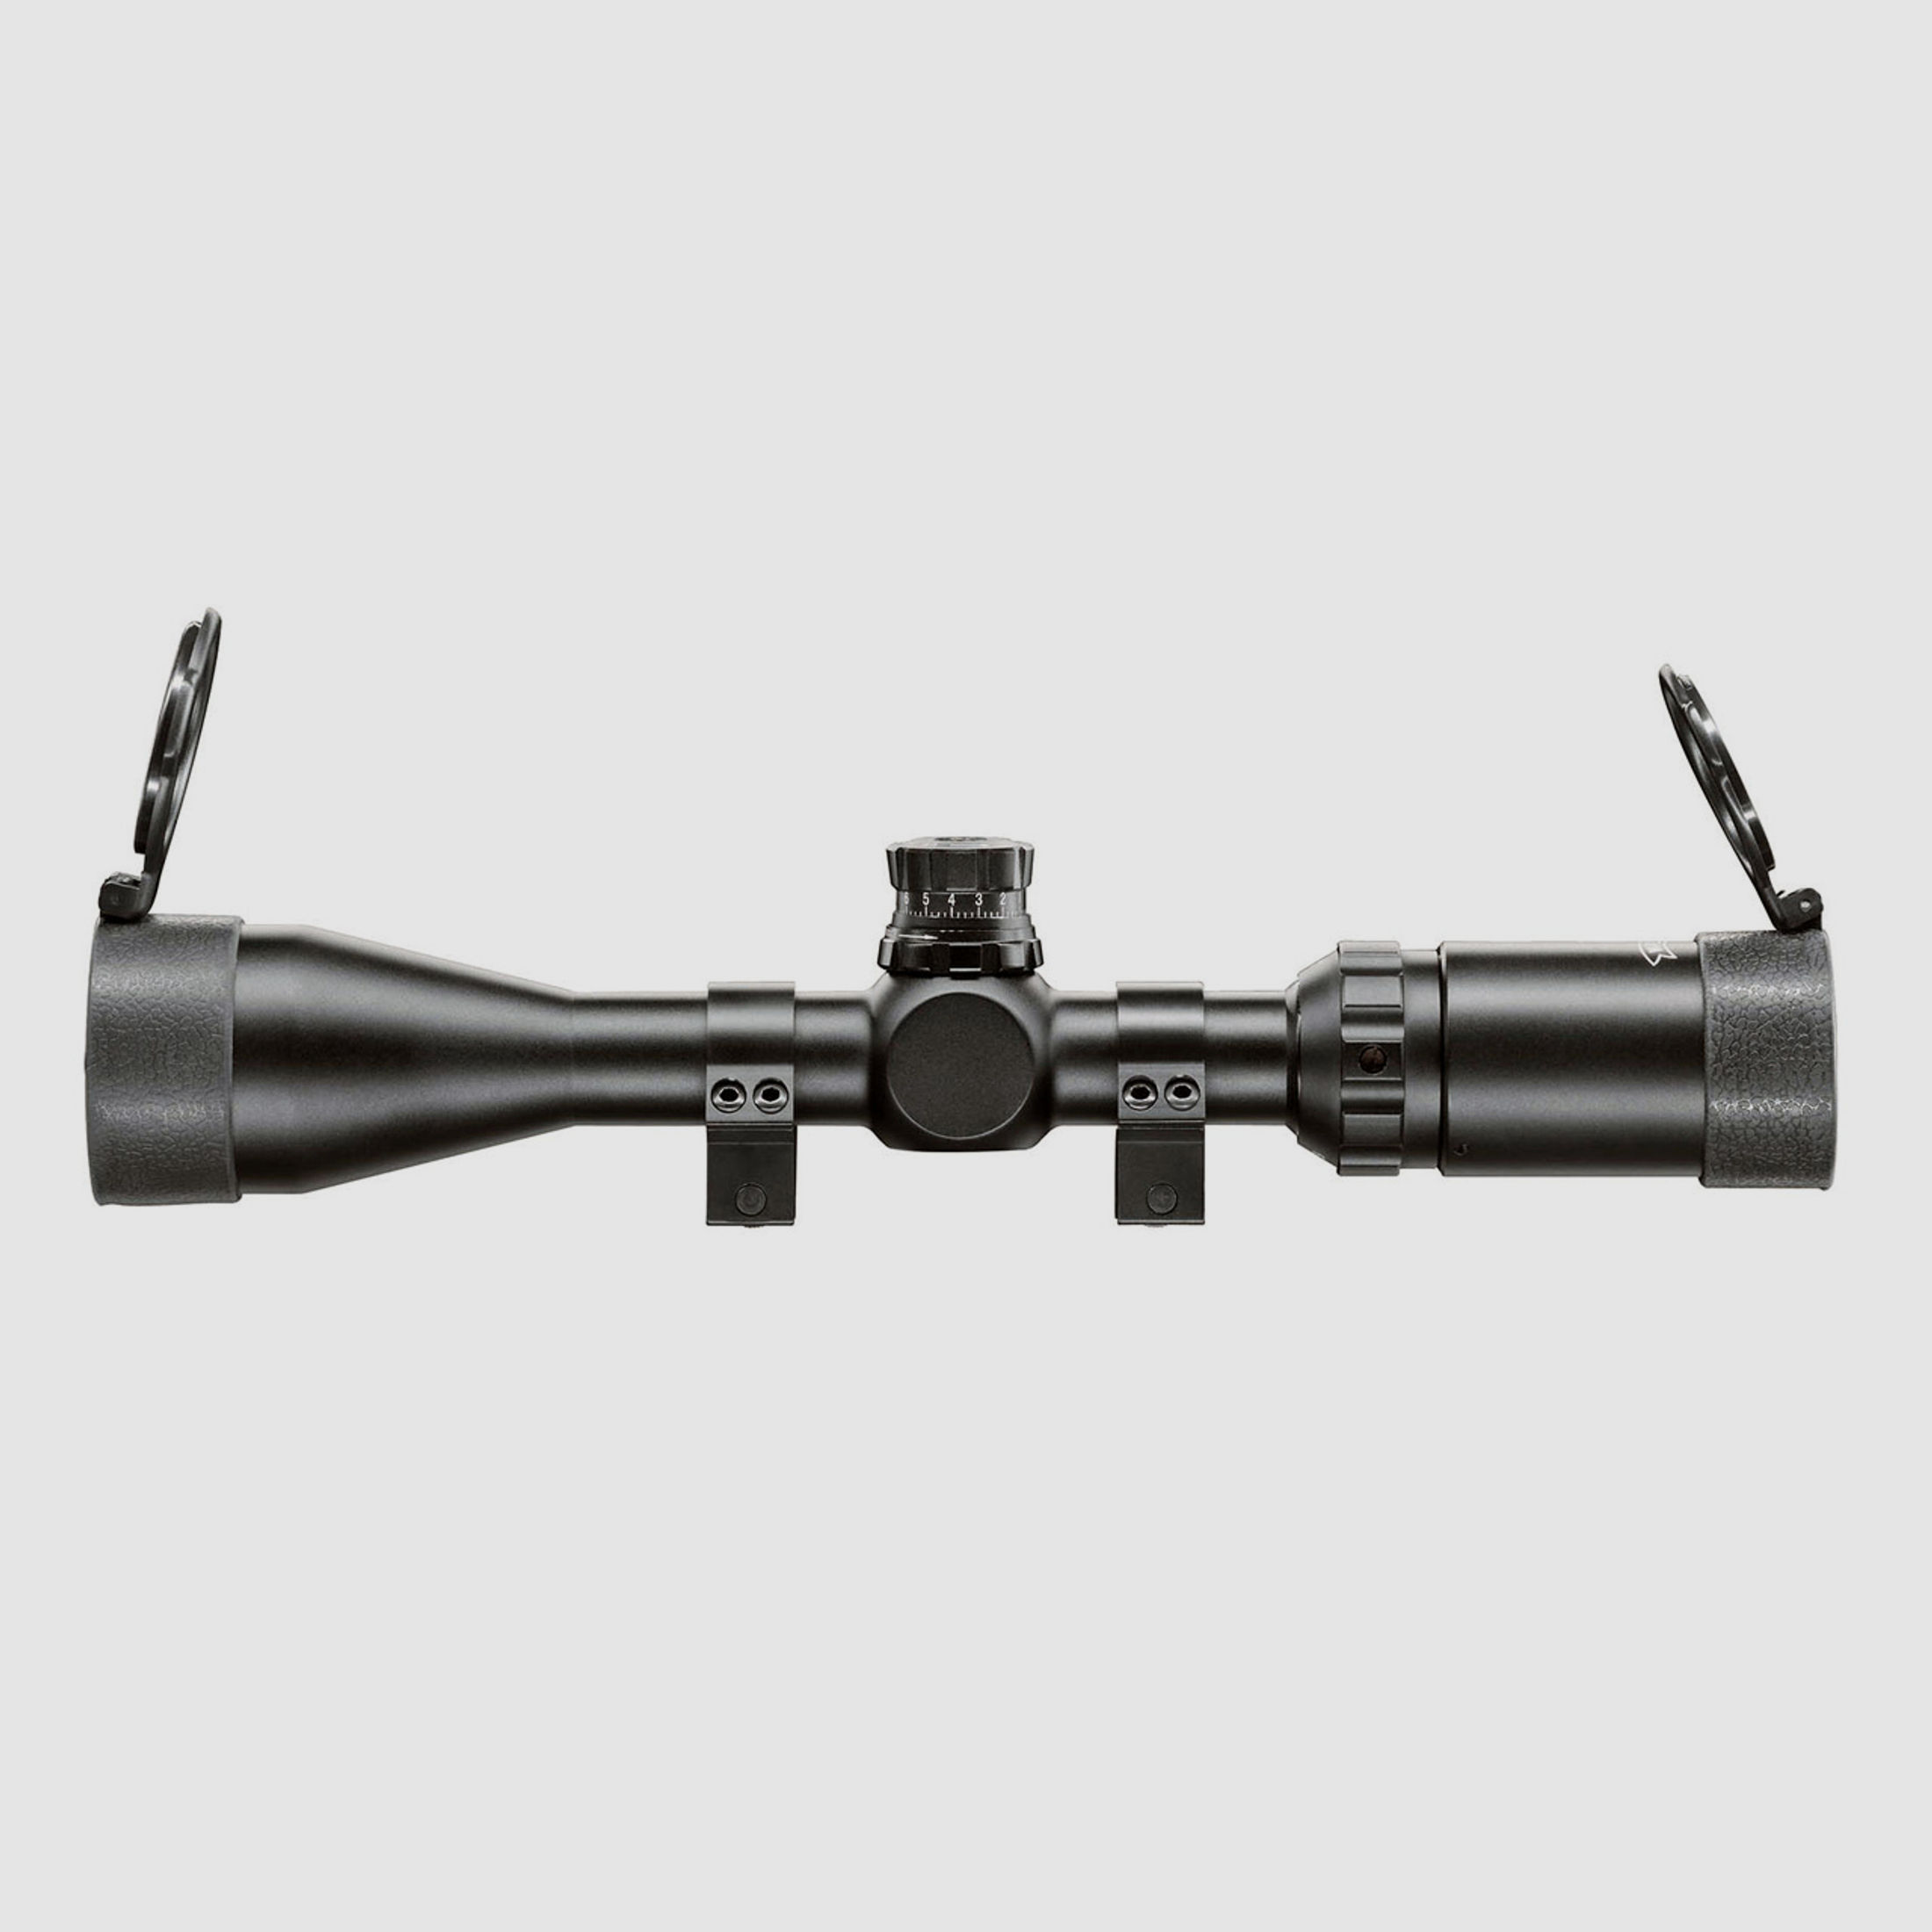 Taktisches Zielfernrohr Walther 3-9x44 Sniper, MilDot Absehen, Montage fĂĽr Weaver-, Picatinny-Schienen